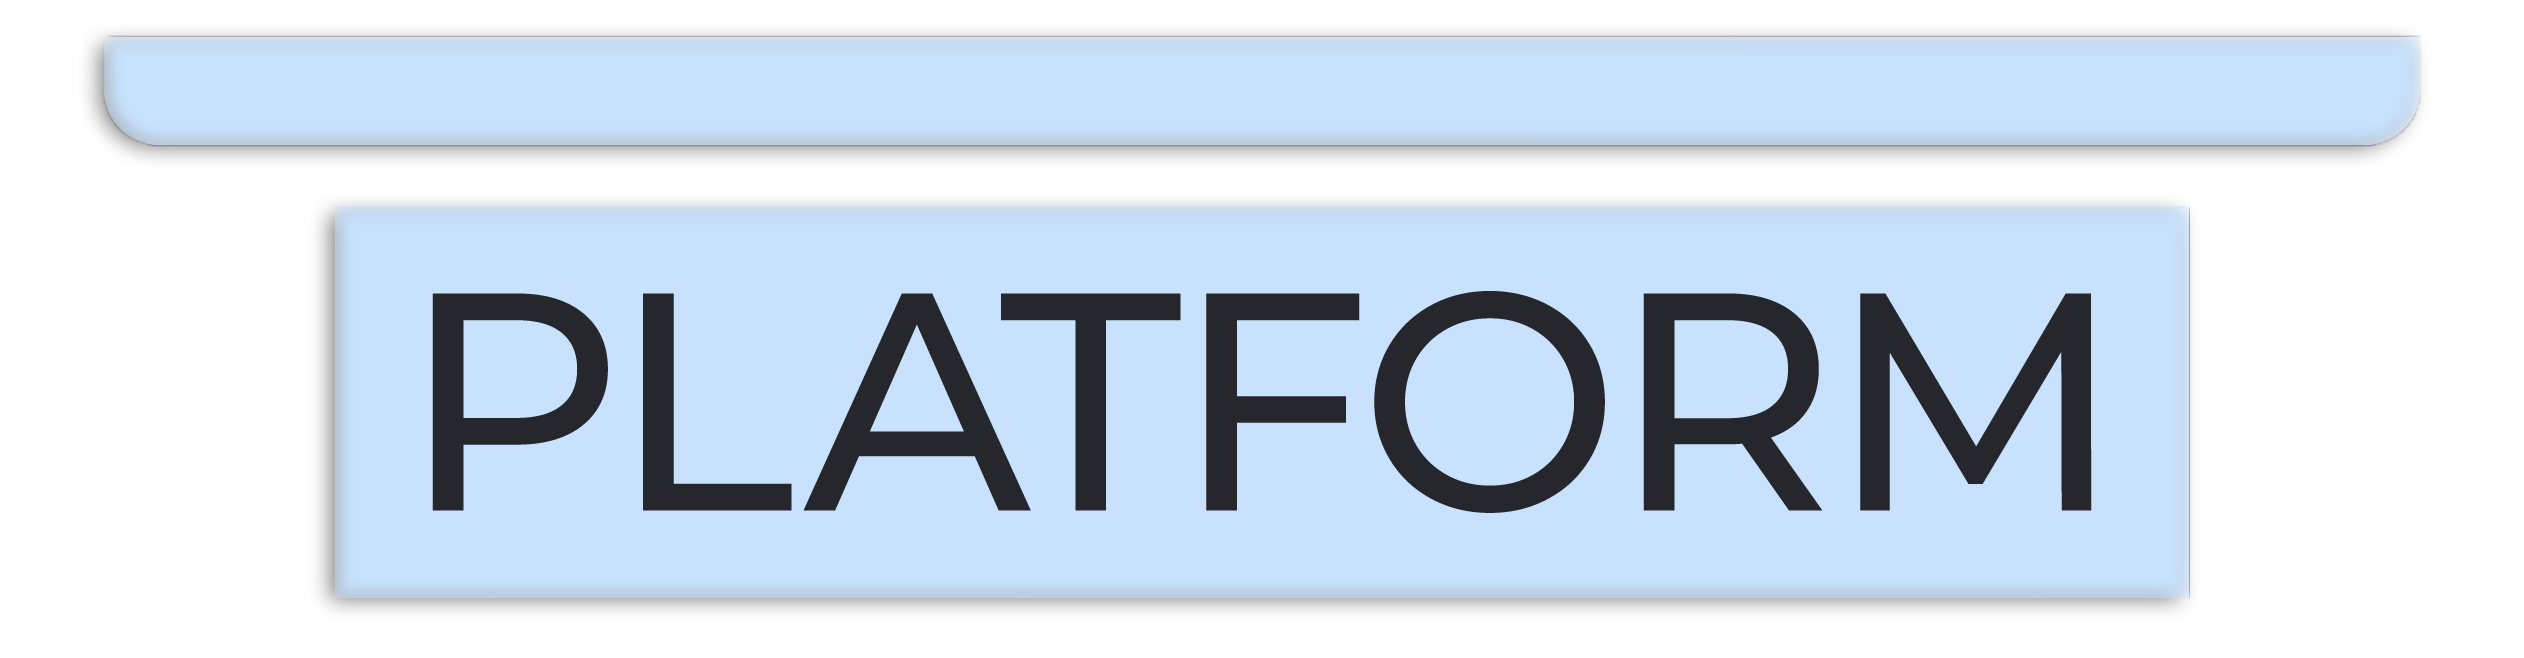 platform banner